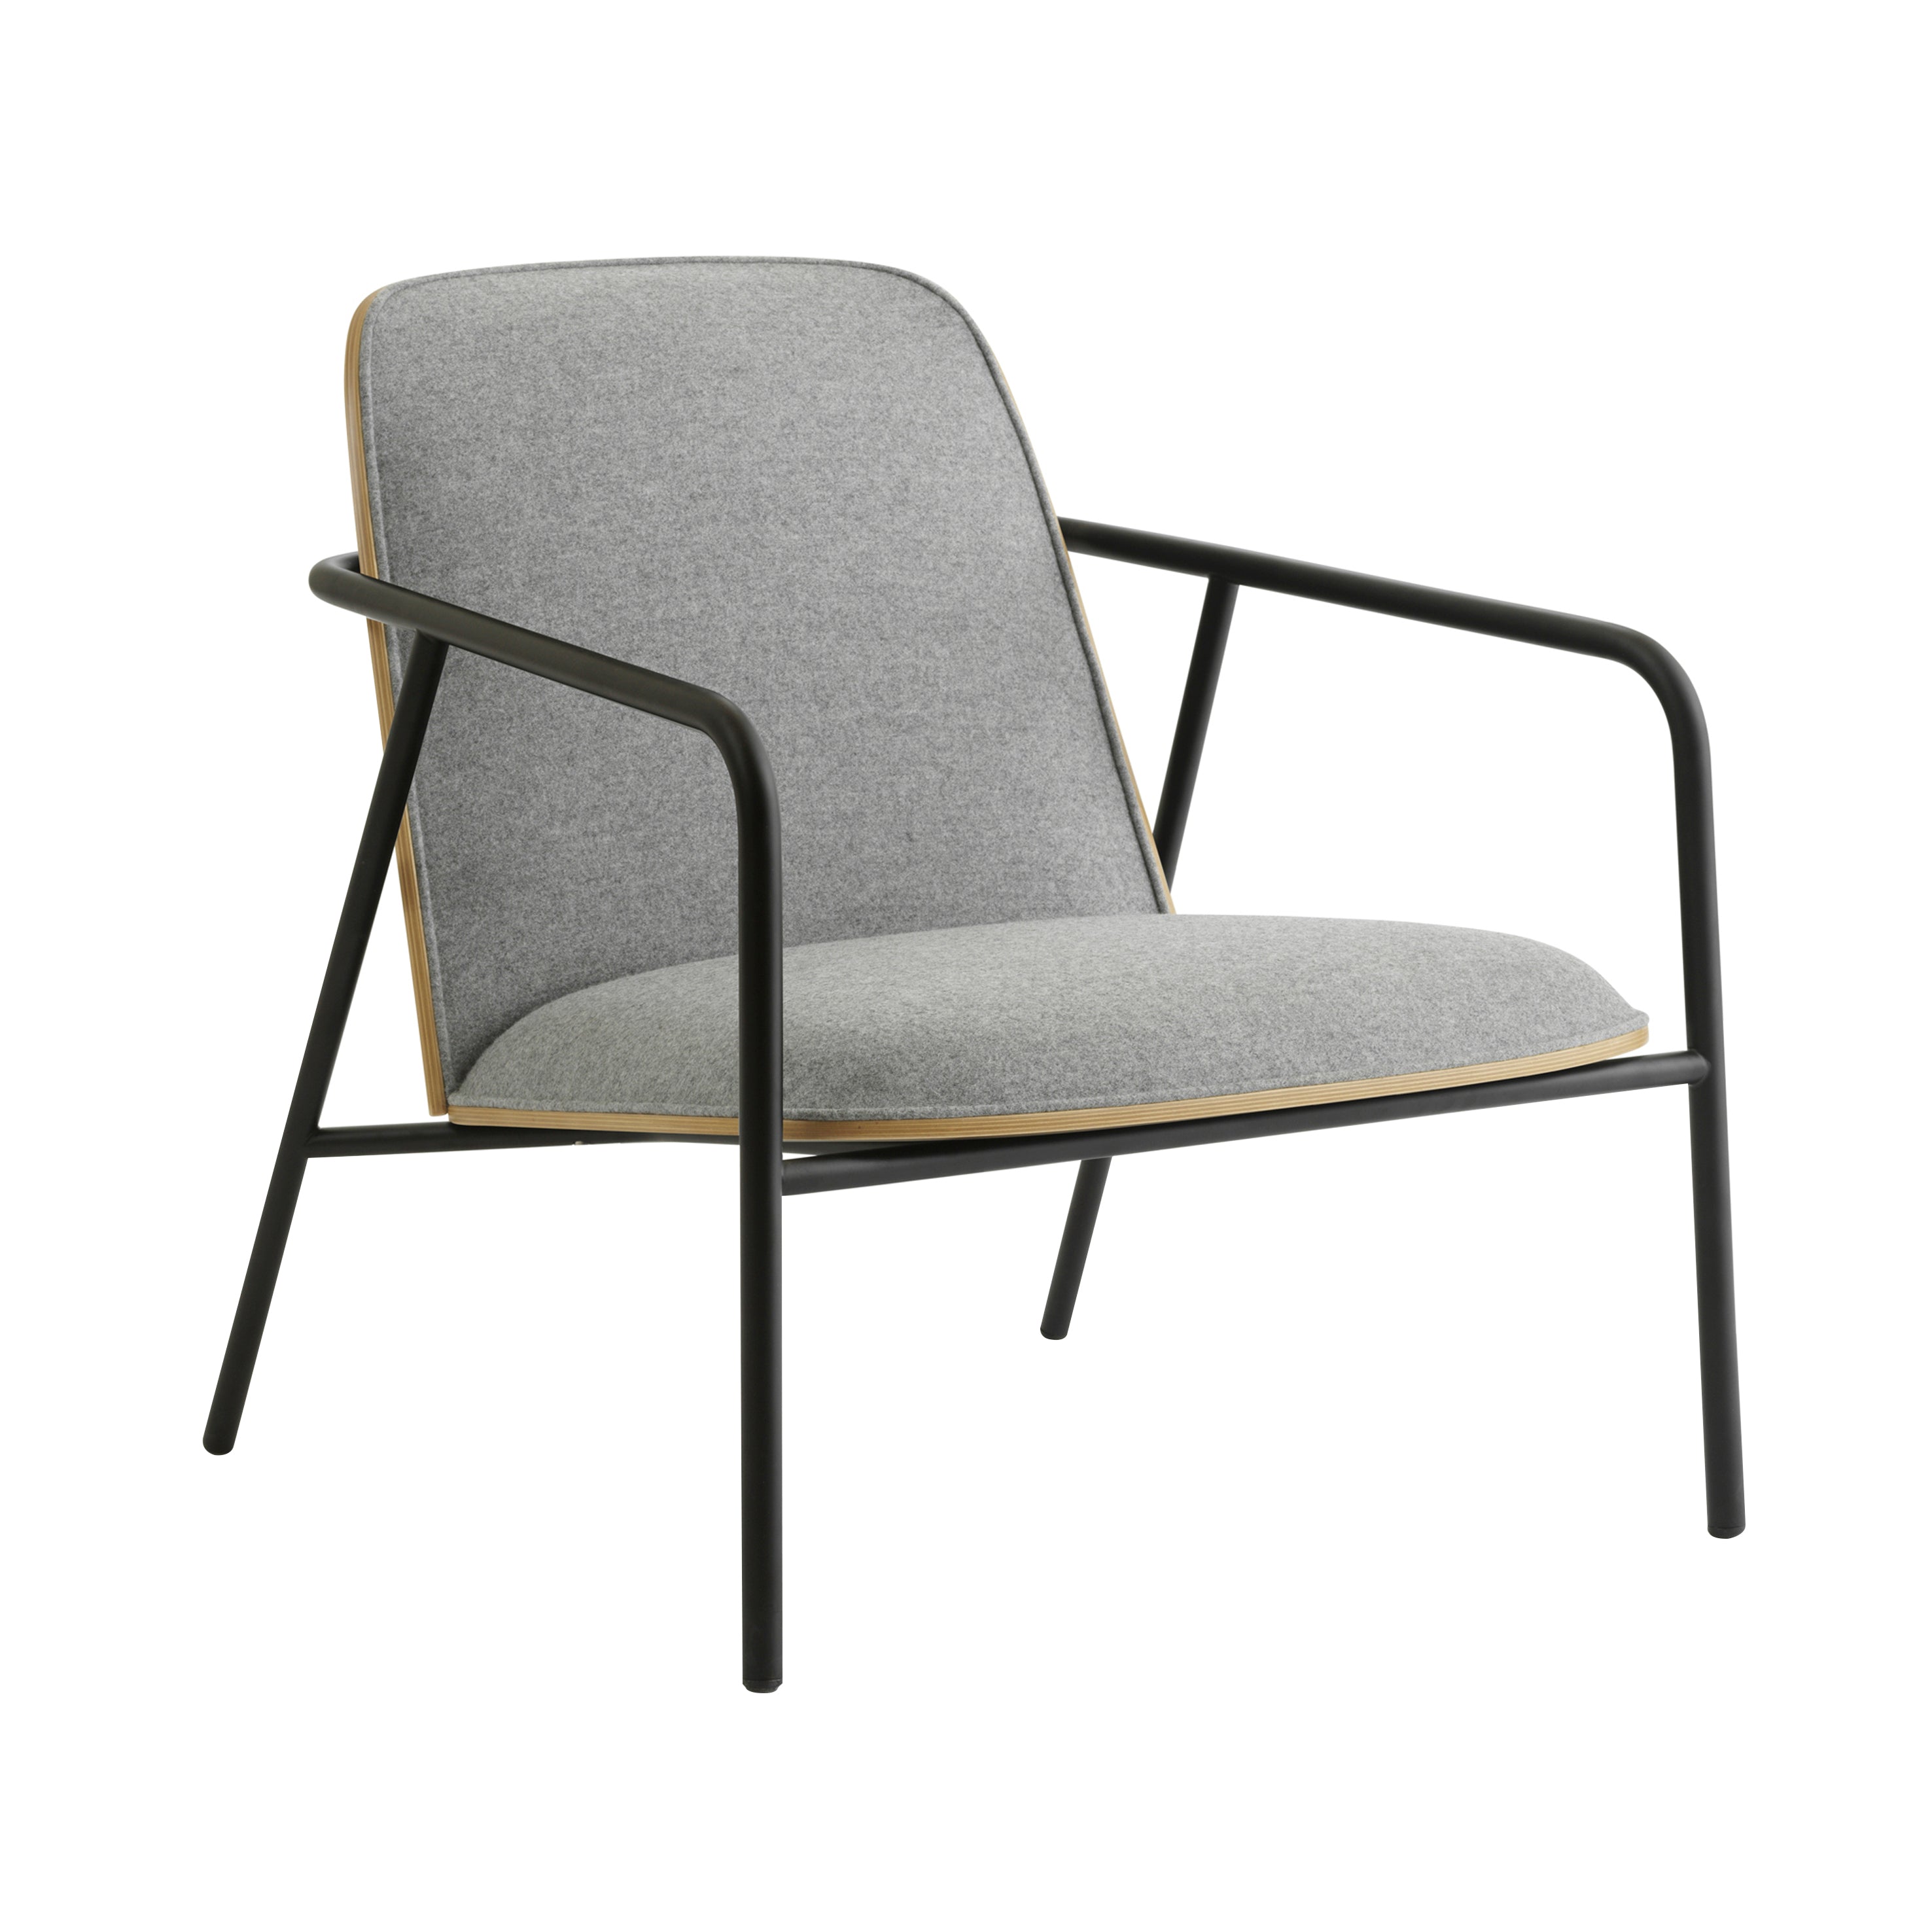 Pad Lounge Chair: Low + Black Steel + Oak